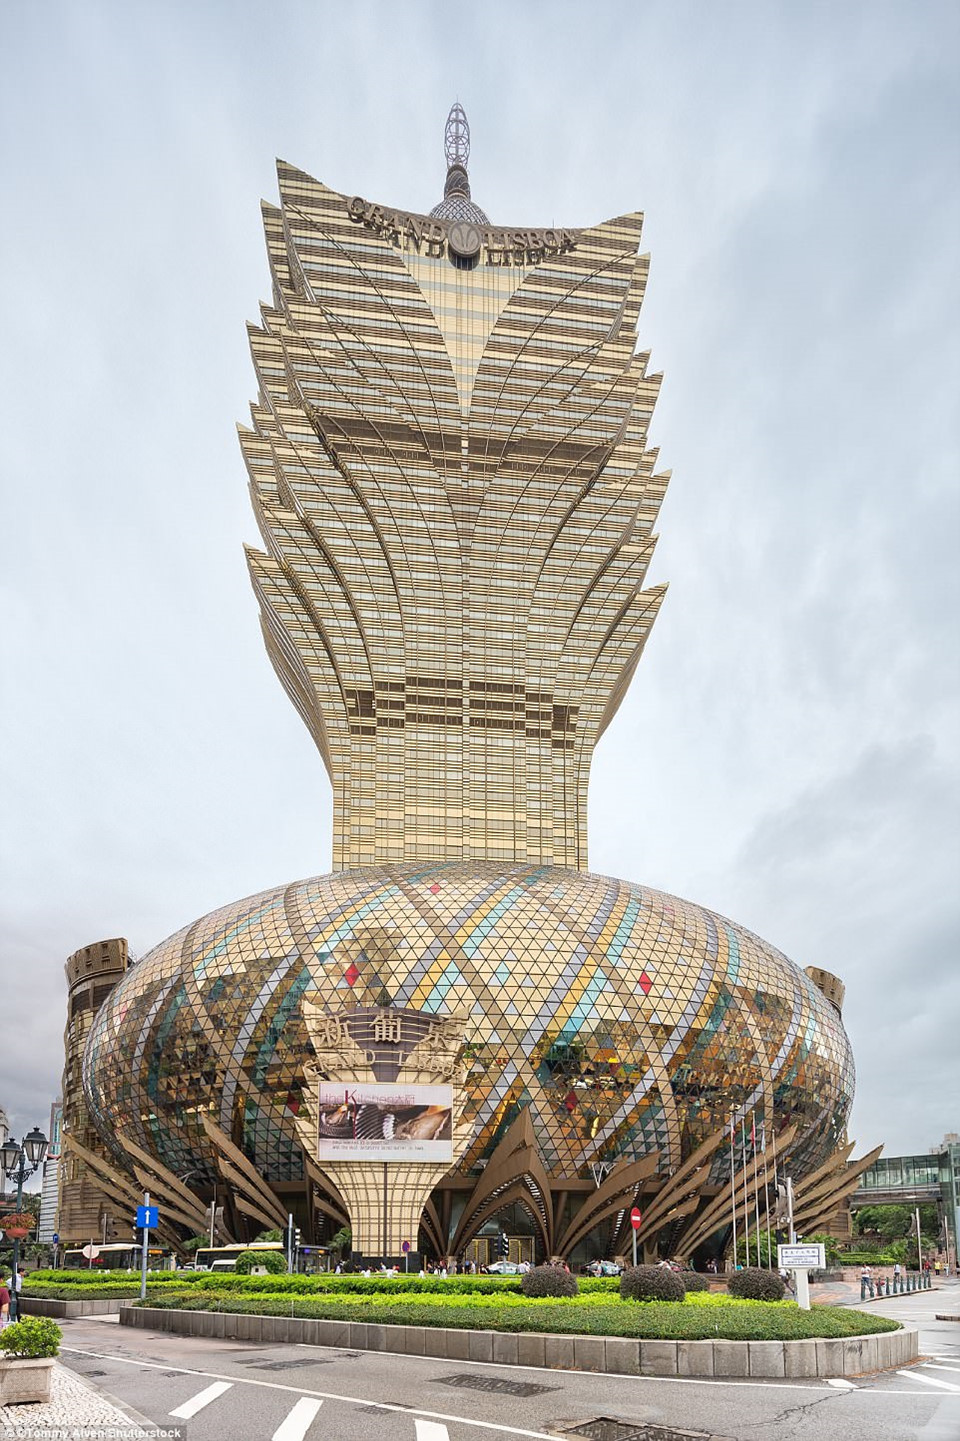 Mặt tiền đẹp lấp lánh của sòng bài Grand Lisboa ở Macau, Trung Quốc. Với lối kiến trúc độc nhất vô nhị, đây là điểm trung tâm của khu cờ bạc và nghỉ dưỡng lớn nhất ở châu Á.